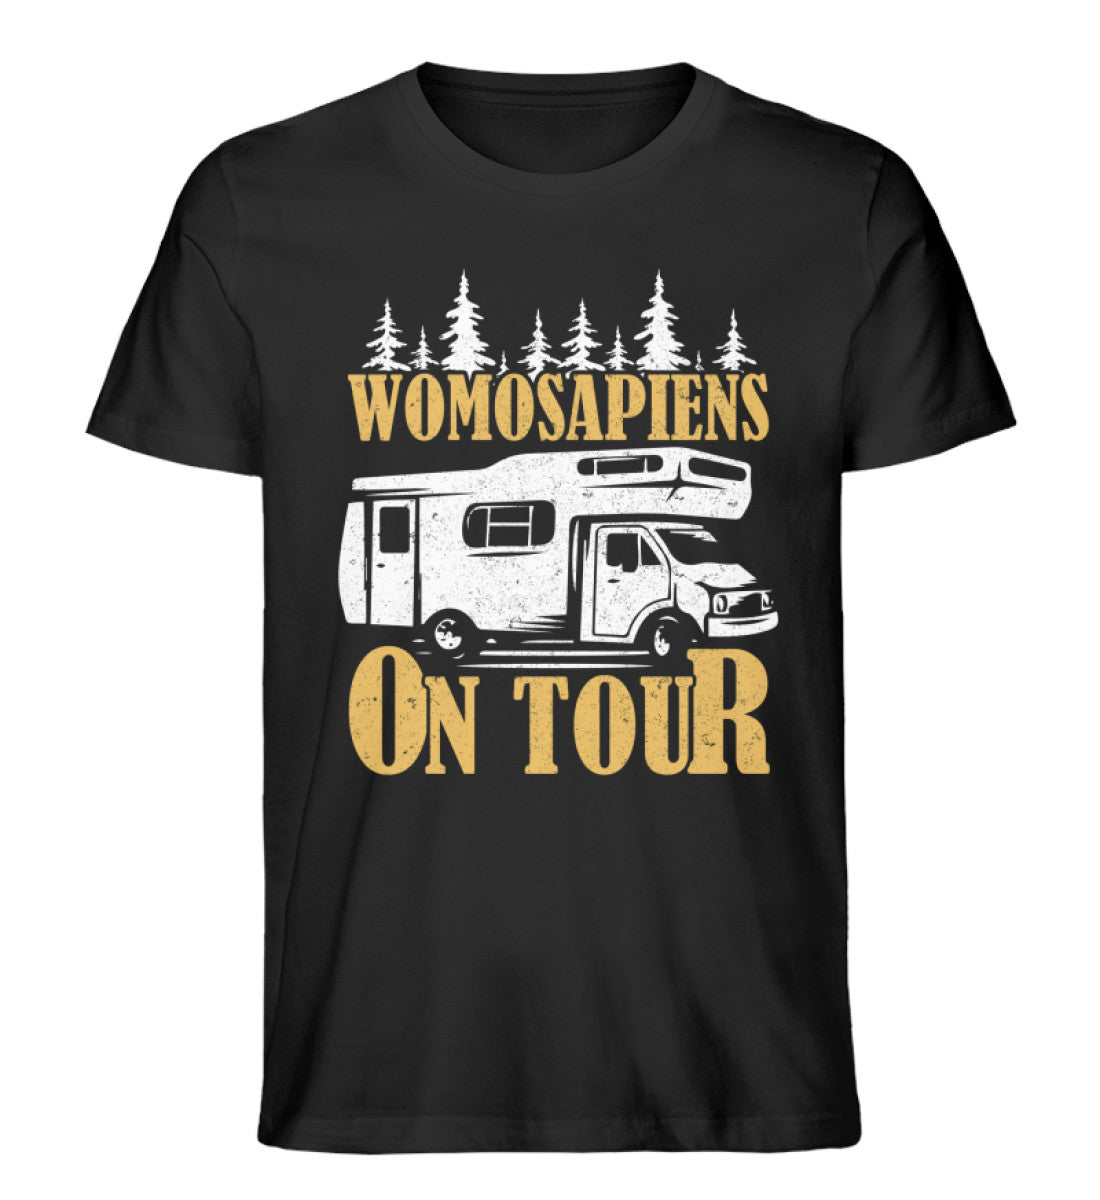 Womosapiens on Tour - Herren Organic T-Shirt camping Schwarz